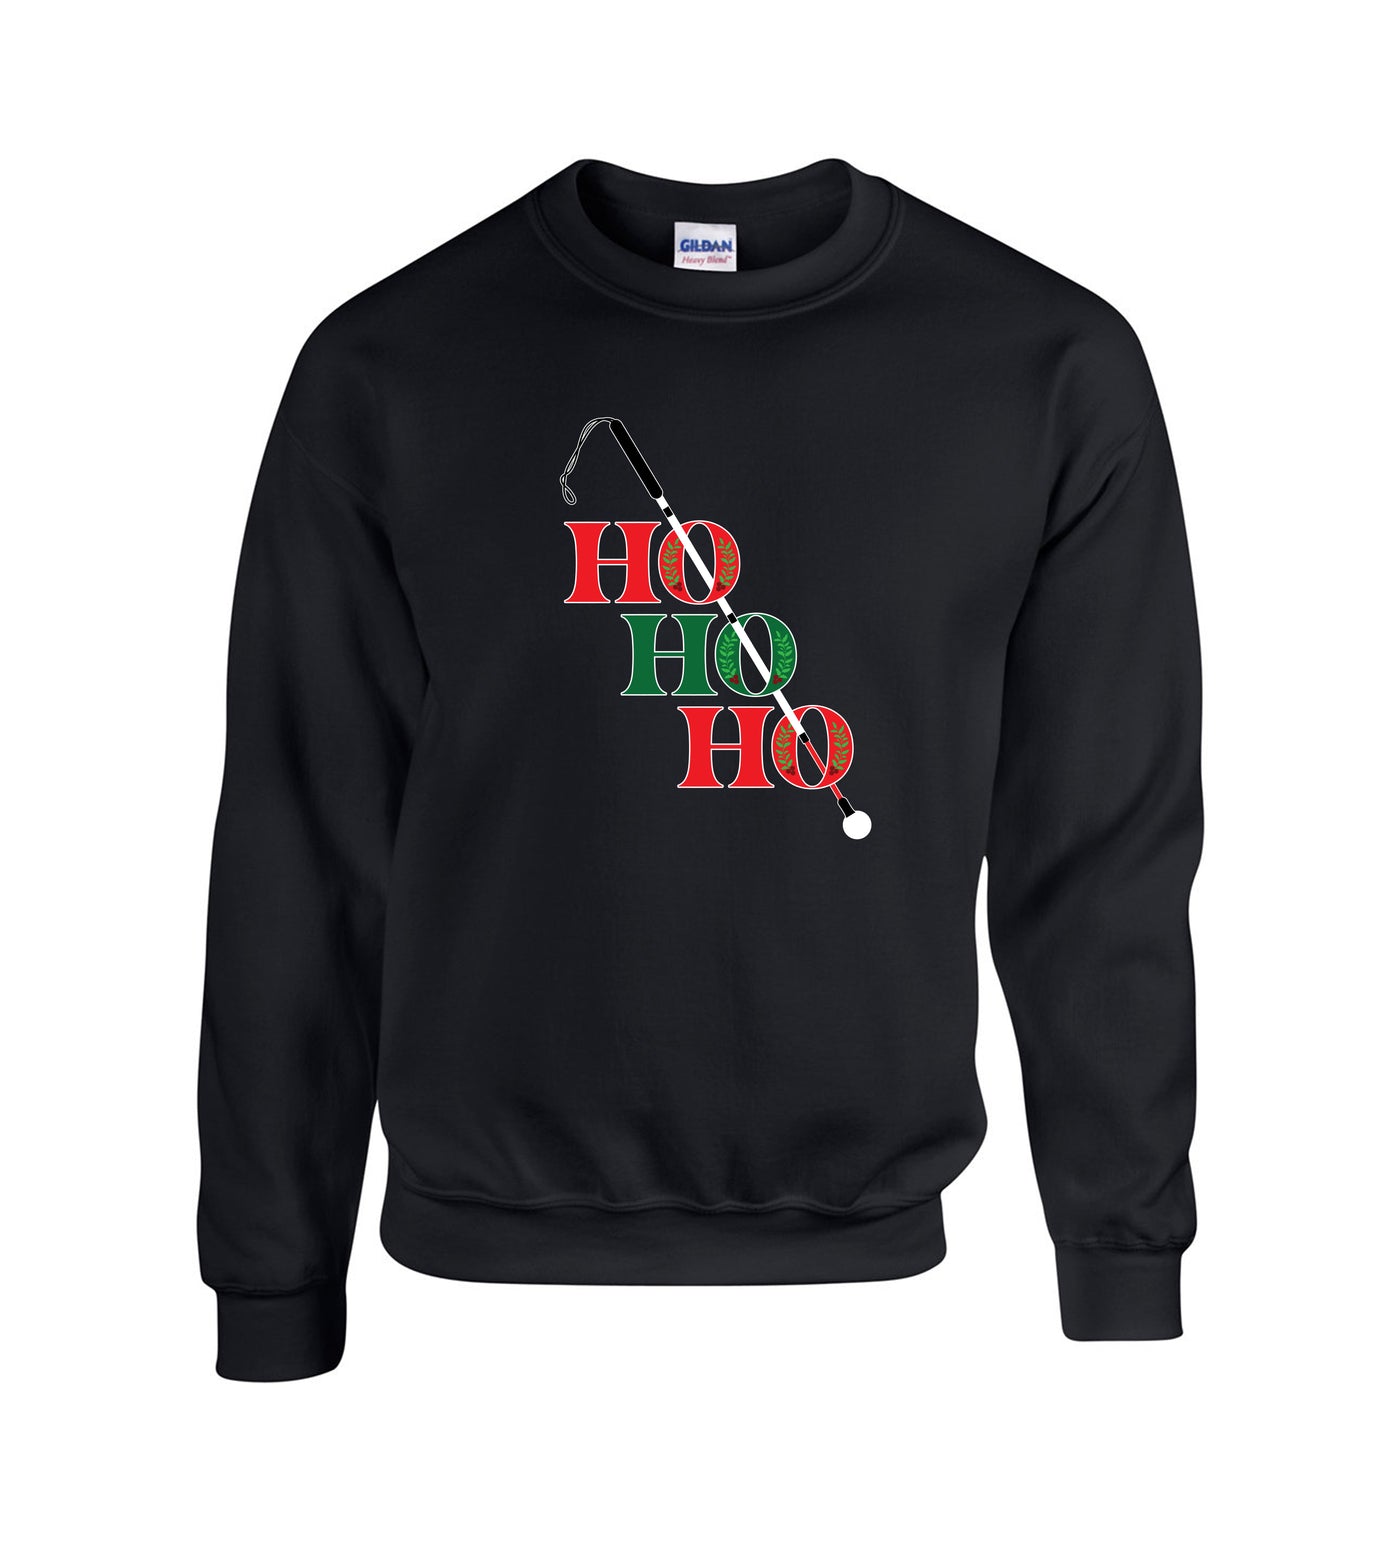 Ho Ho Ho White Cane Crew Sweatshirt - Black